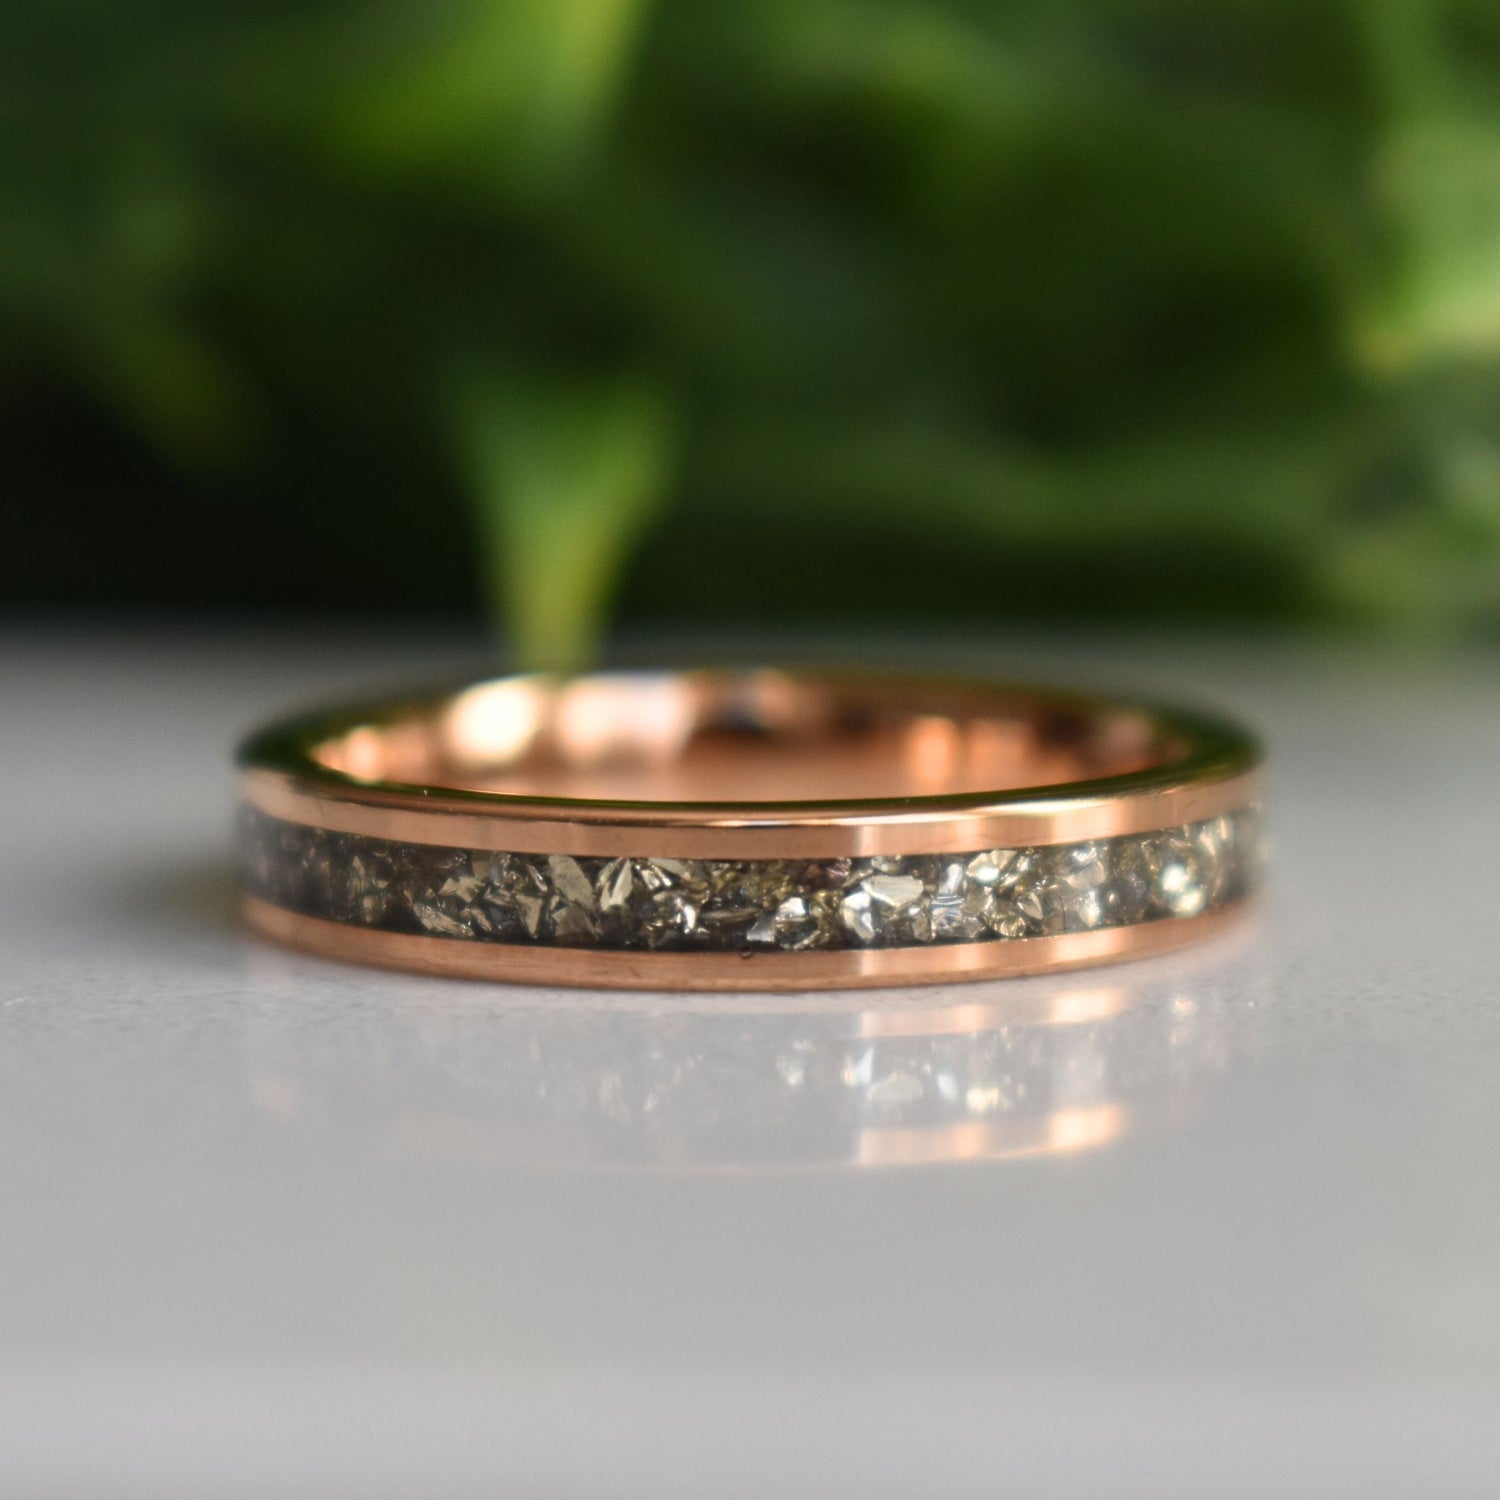 Amber Rose Gold Diamond Ring